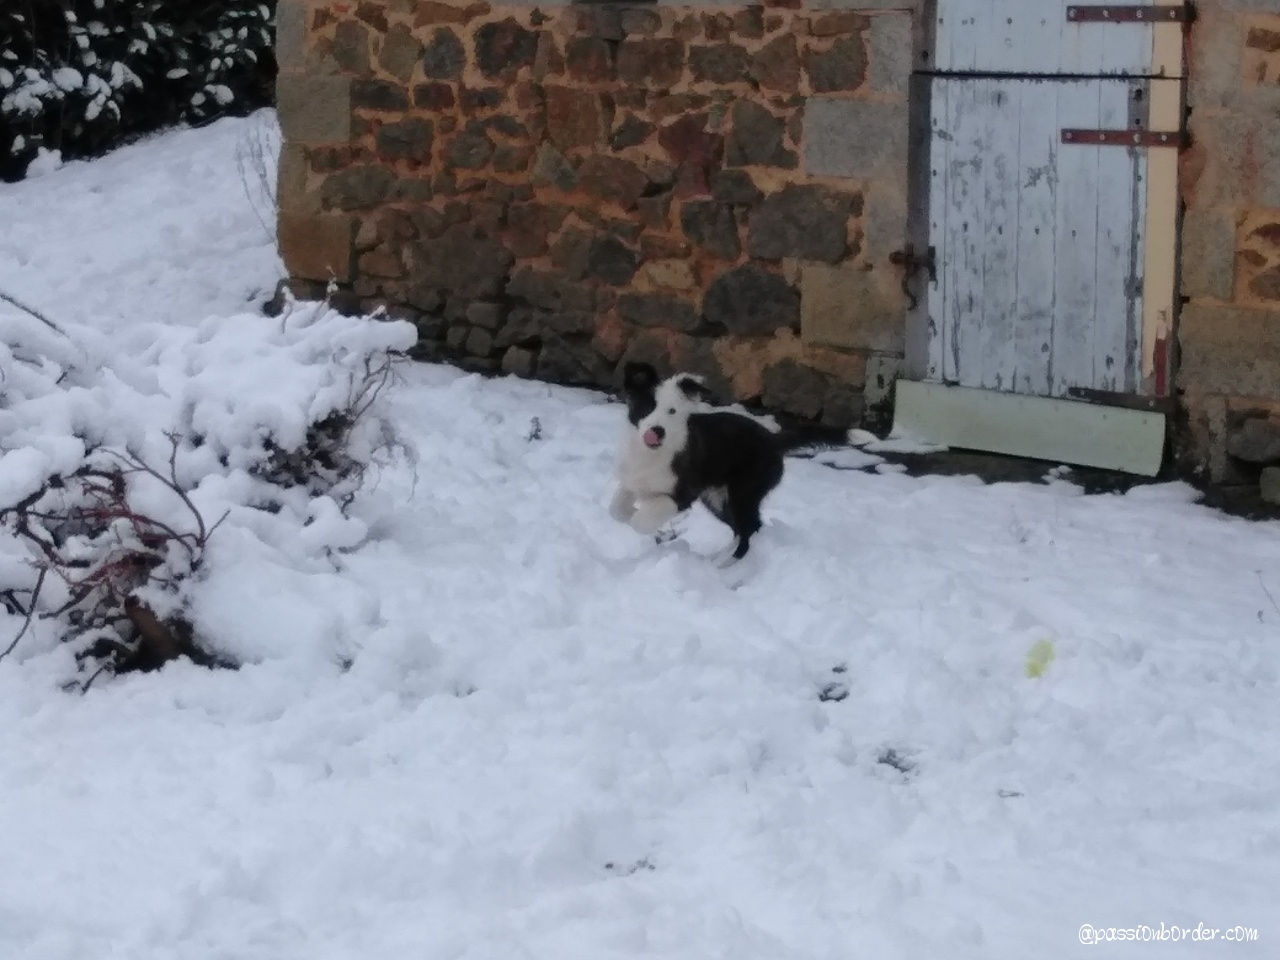 Ossau, 3 mois, découvre la neige